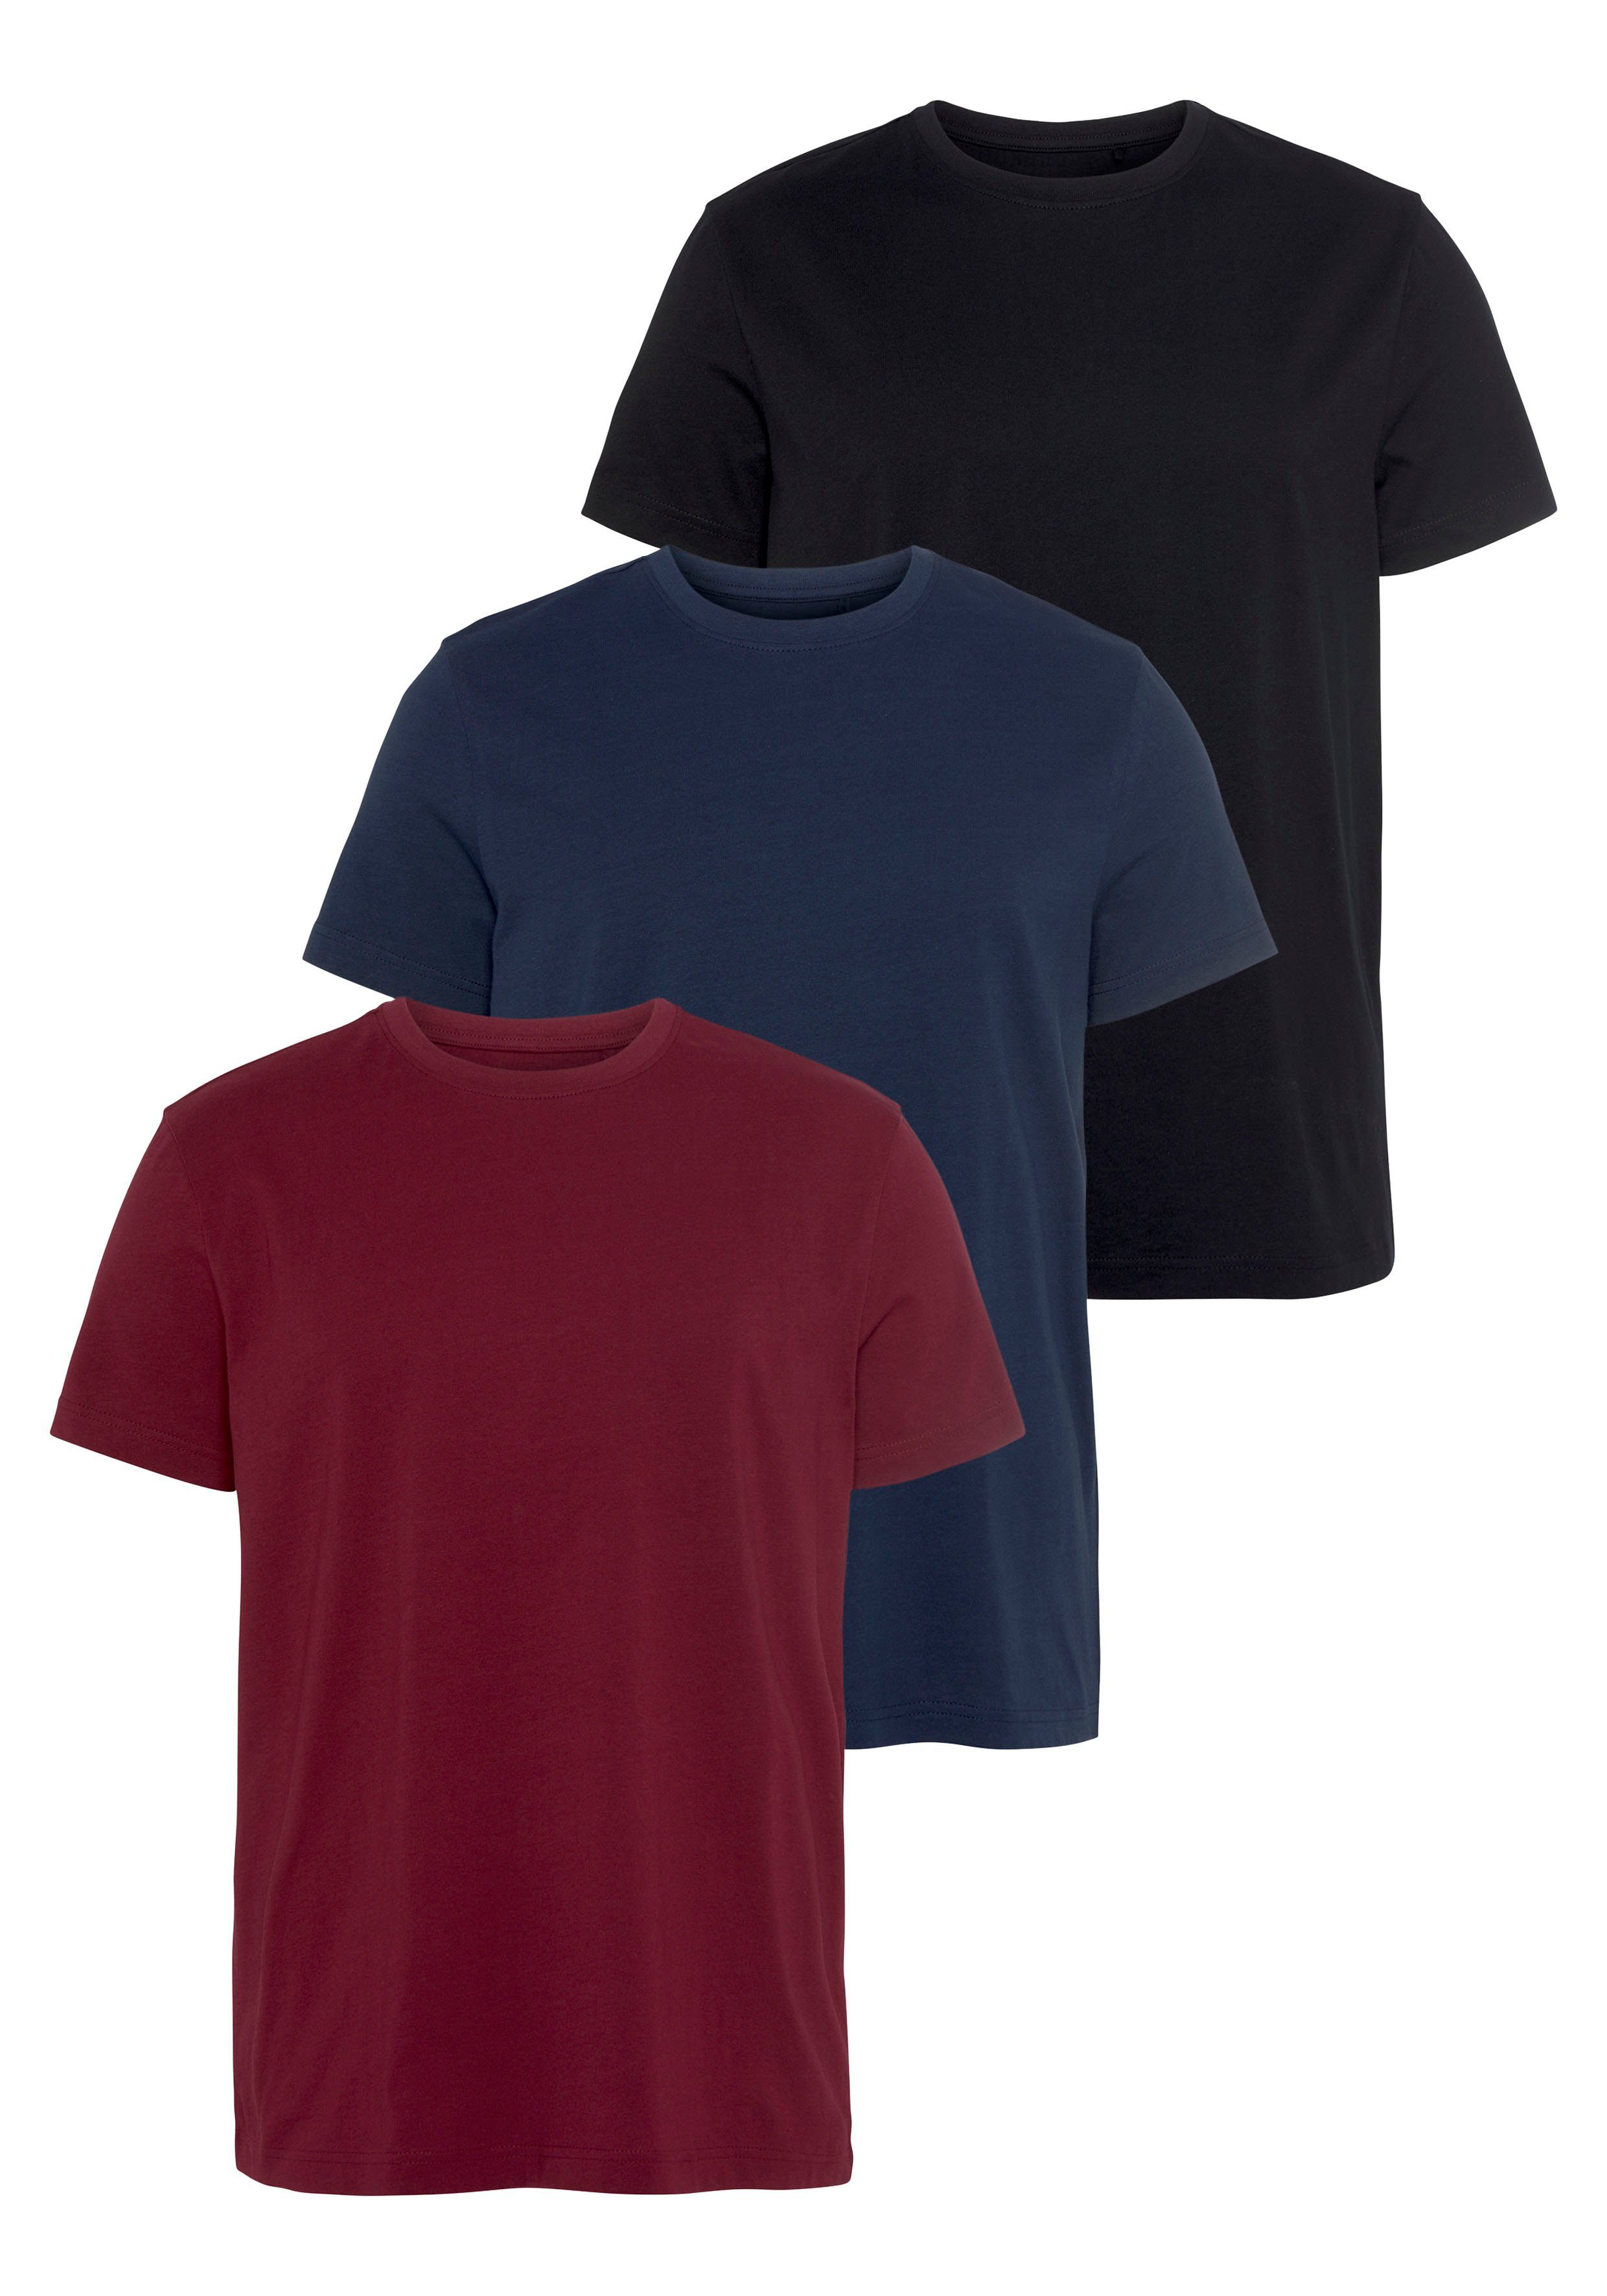 Rundhals T-Shirts für Herren kaufen » T-Shirts mit Rundhals